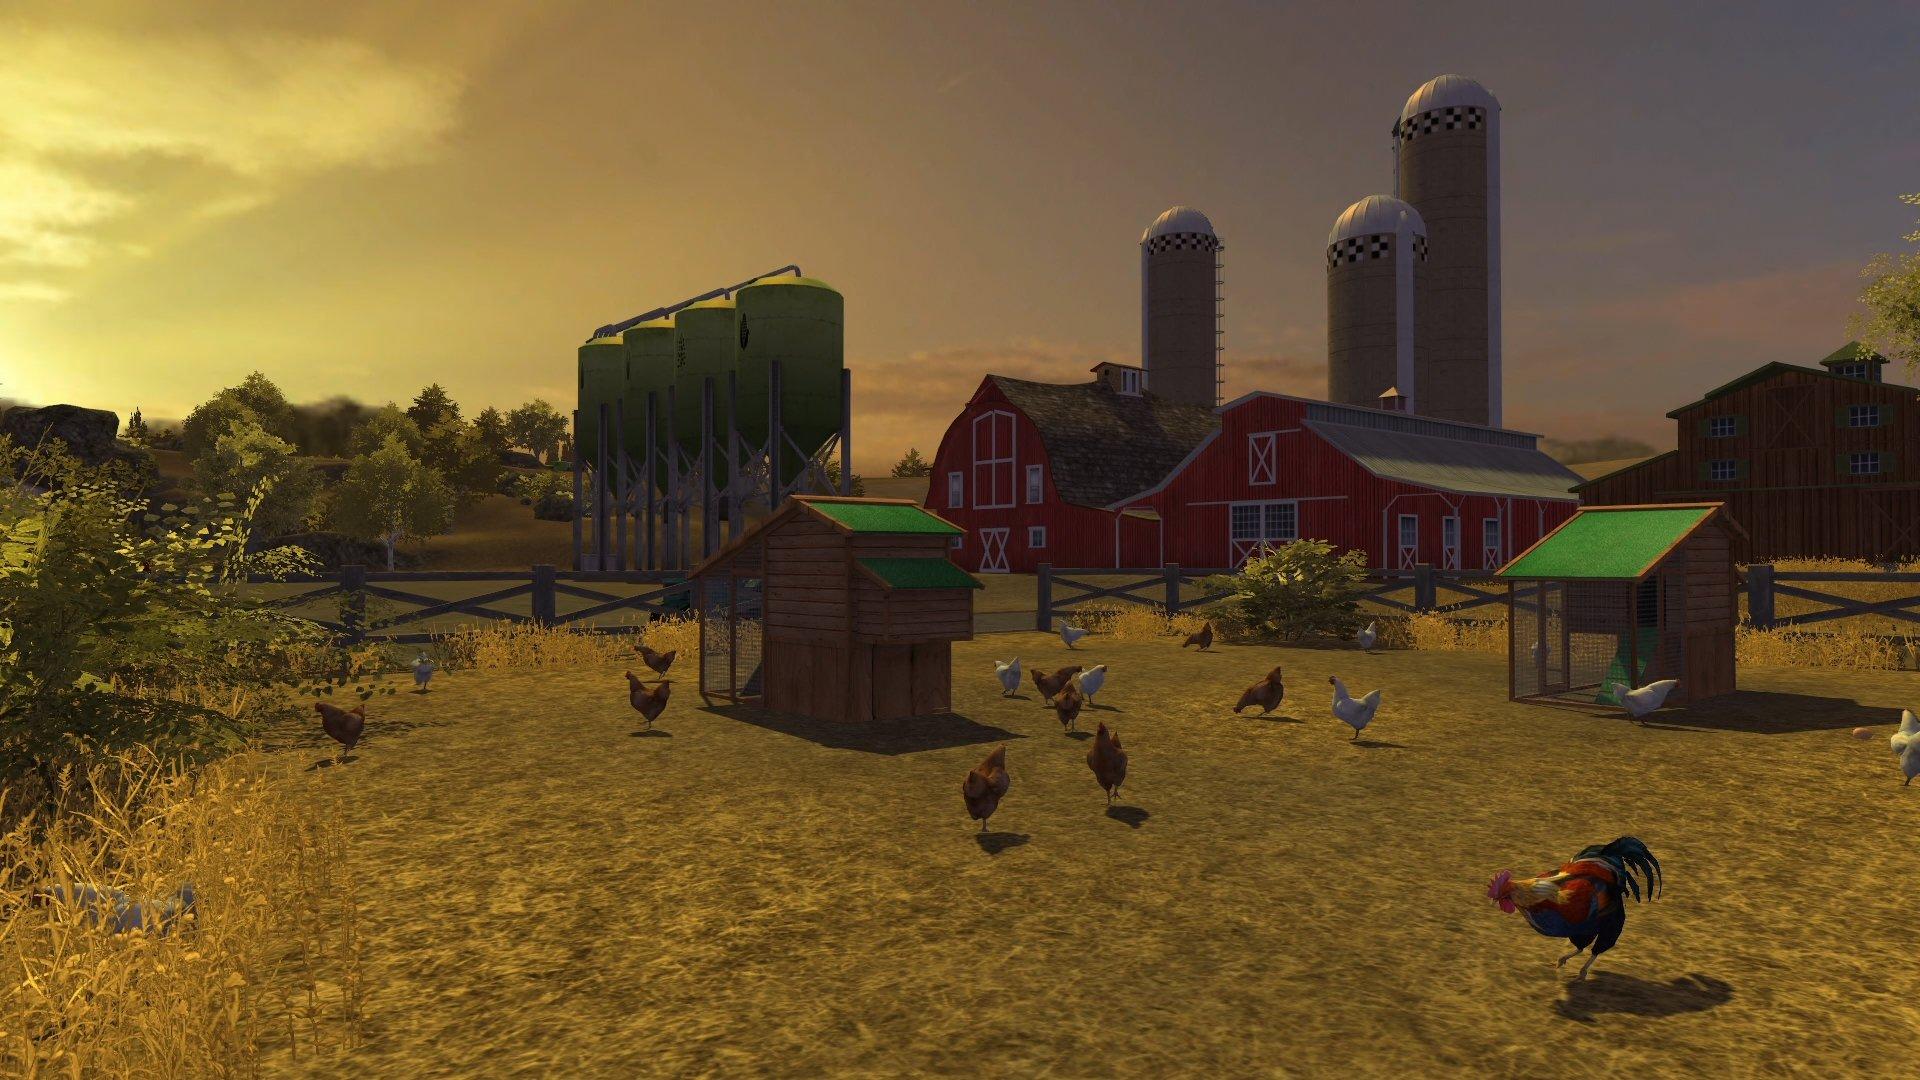  Farming Simulator - Xbox 360 : Maximum Games: Video Games